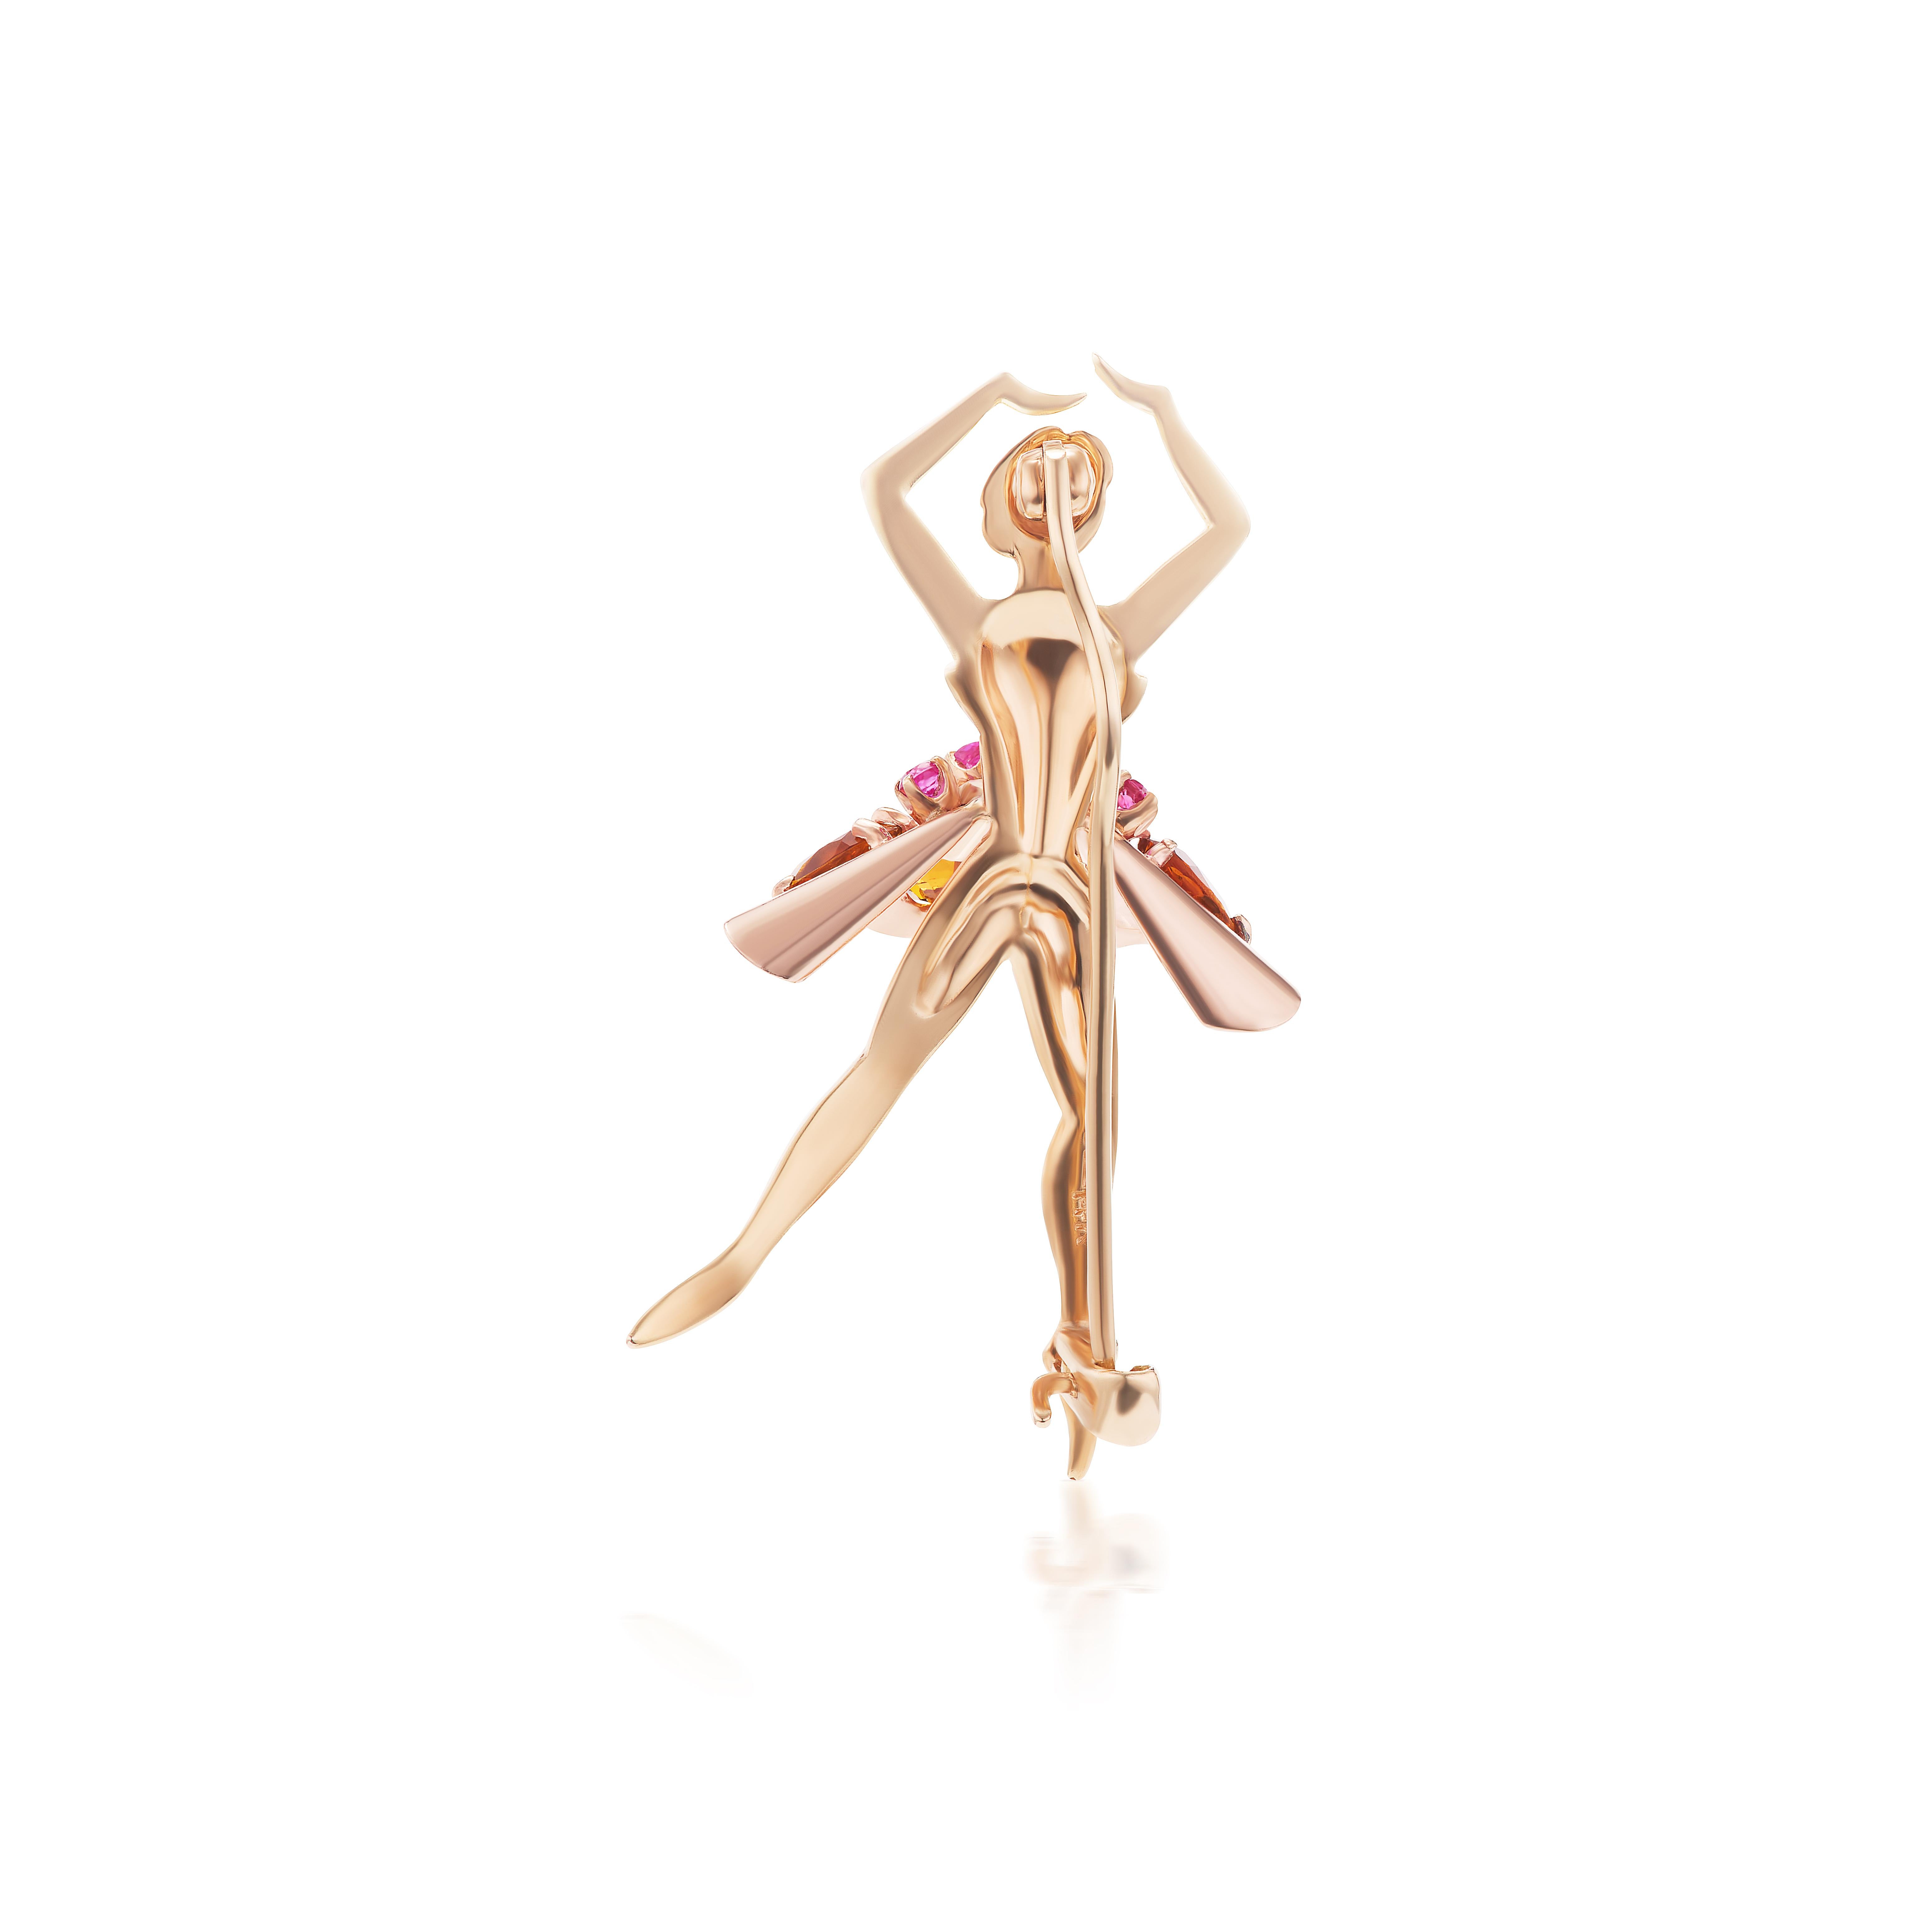 Hübsches und süßes Design einer hüpfenden Ballerina mit ovalen Zitrinen und runden Rubinen in 14K Gold. Die Poesie der Bewegung, die durch das Kleid der Tänzerin und die erhobenen Arme in dieser Brosche eingefangen wird, ist ein schöner Akzent für